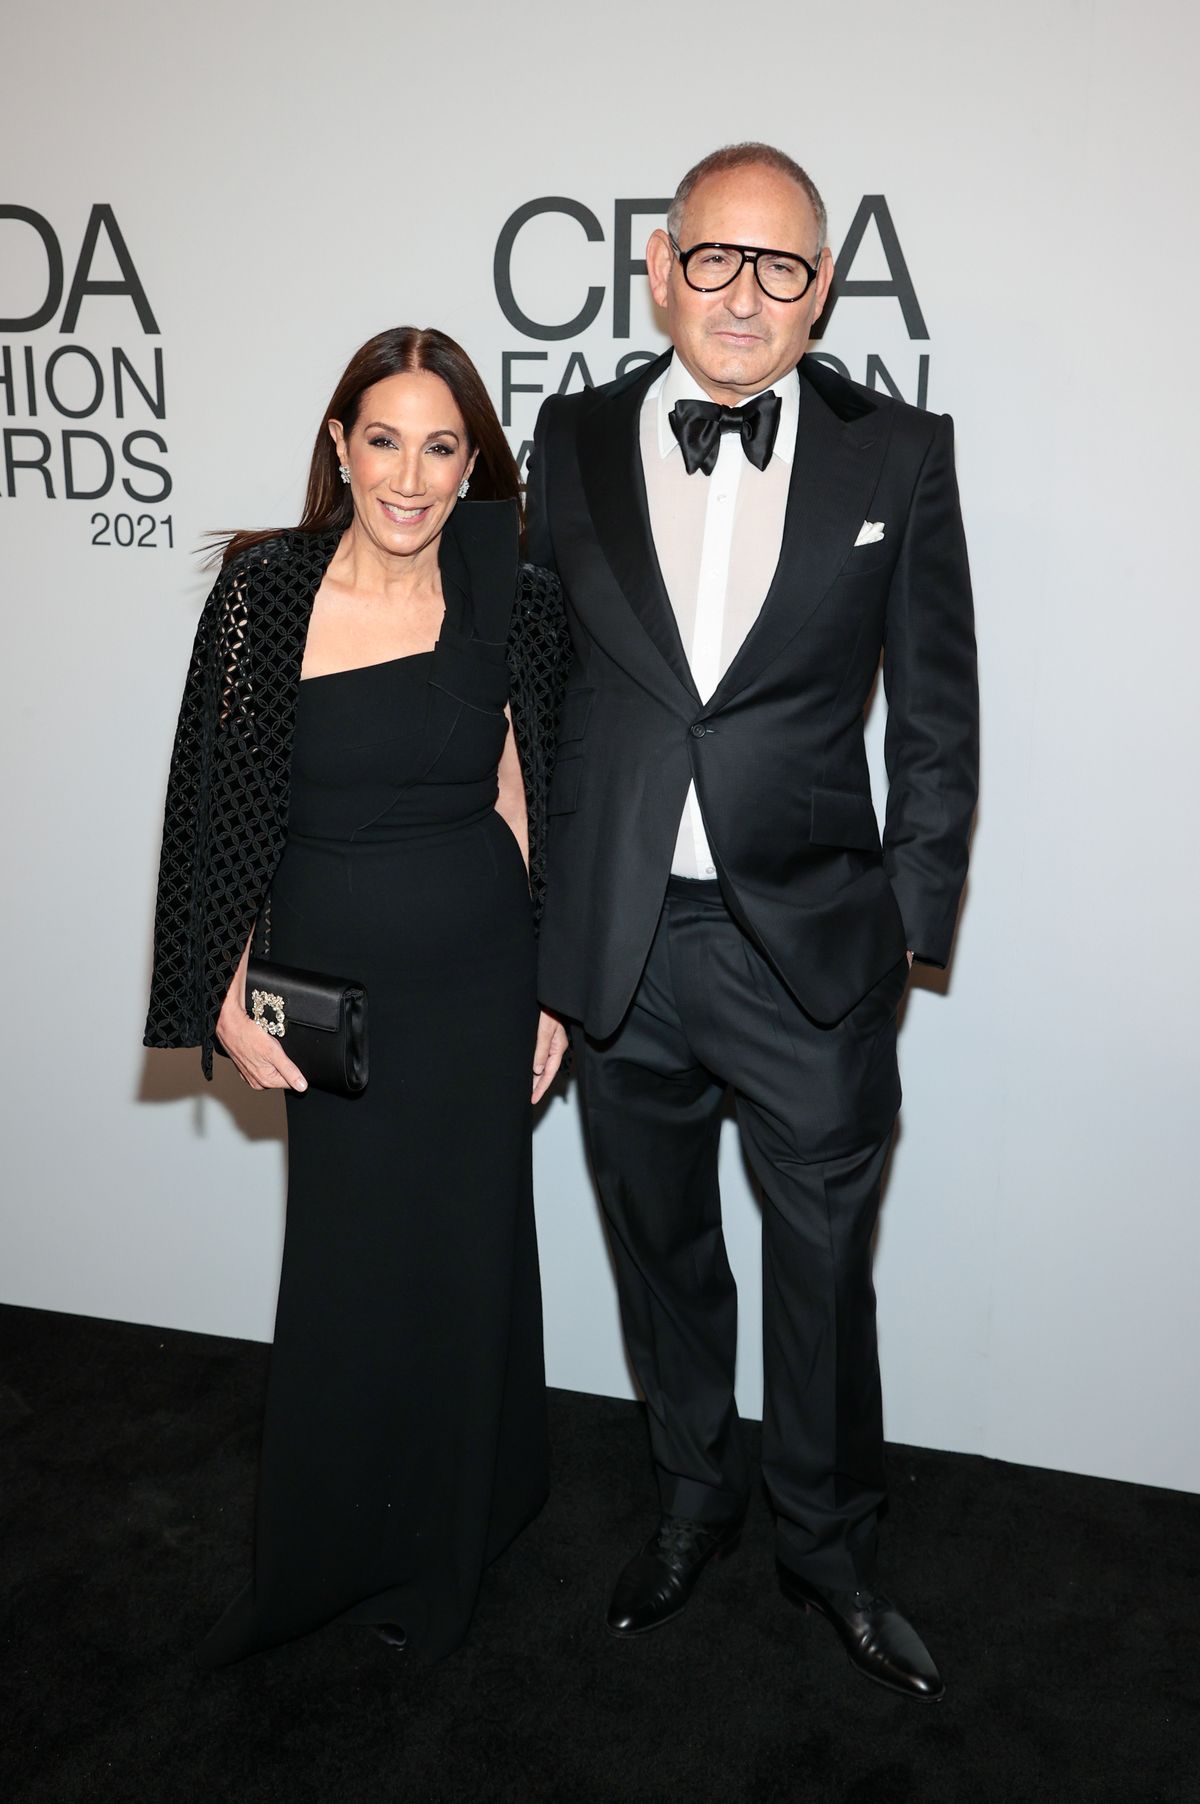 Джейн Хертцмарк Худис, Джон Демпси на церемонии вручения наград CFDA Fashion Awards 2021